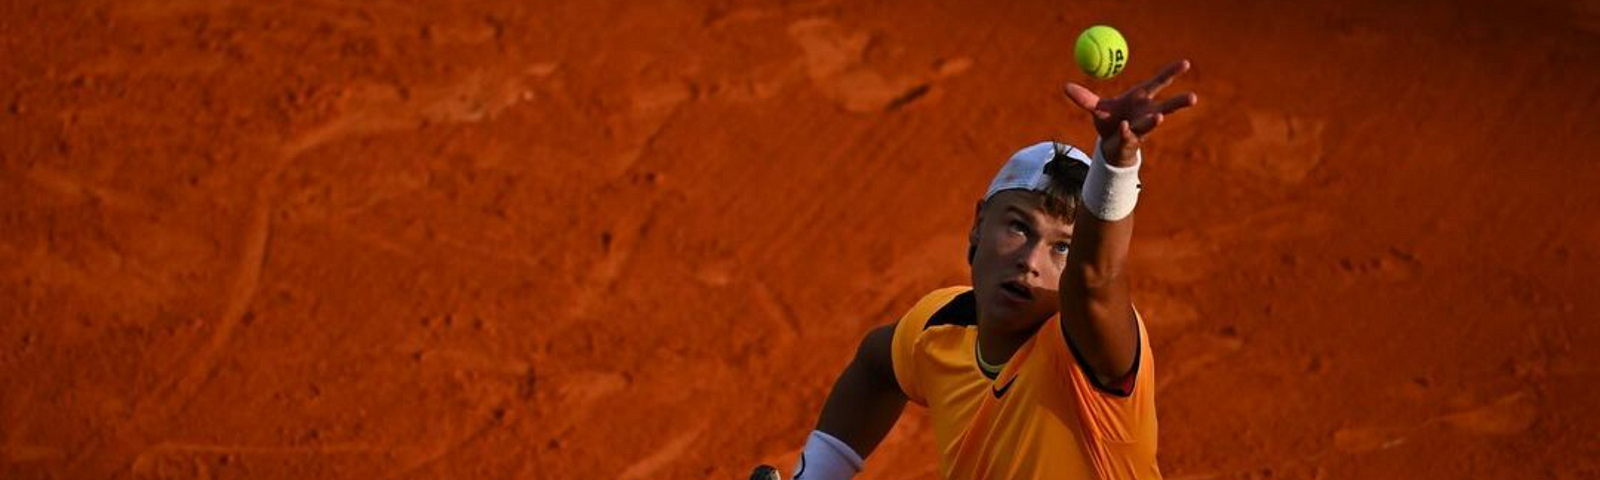 Holger Rune is the best tennis player in tiebreaks. | Image Credit: Holger Rune/Instagram via Getty Images